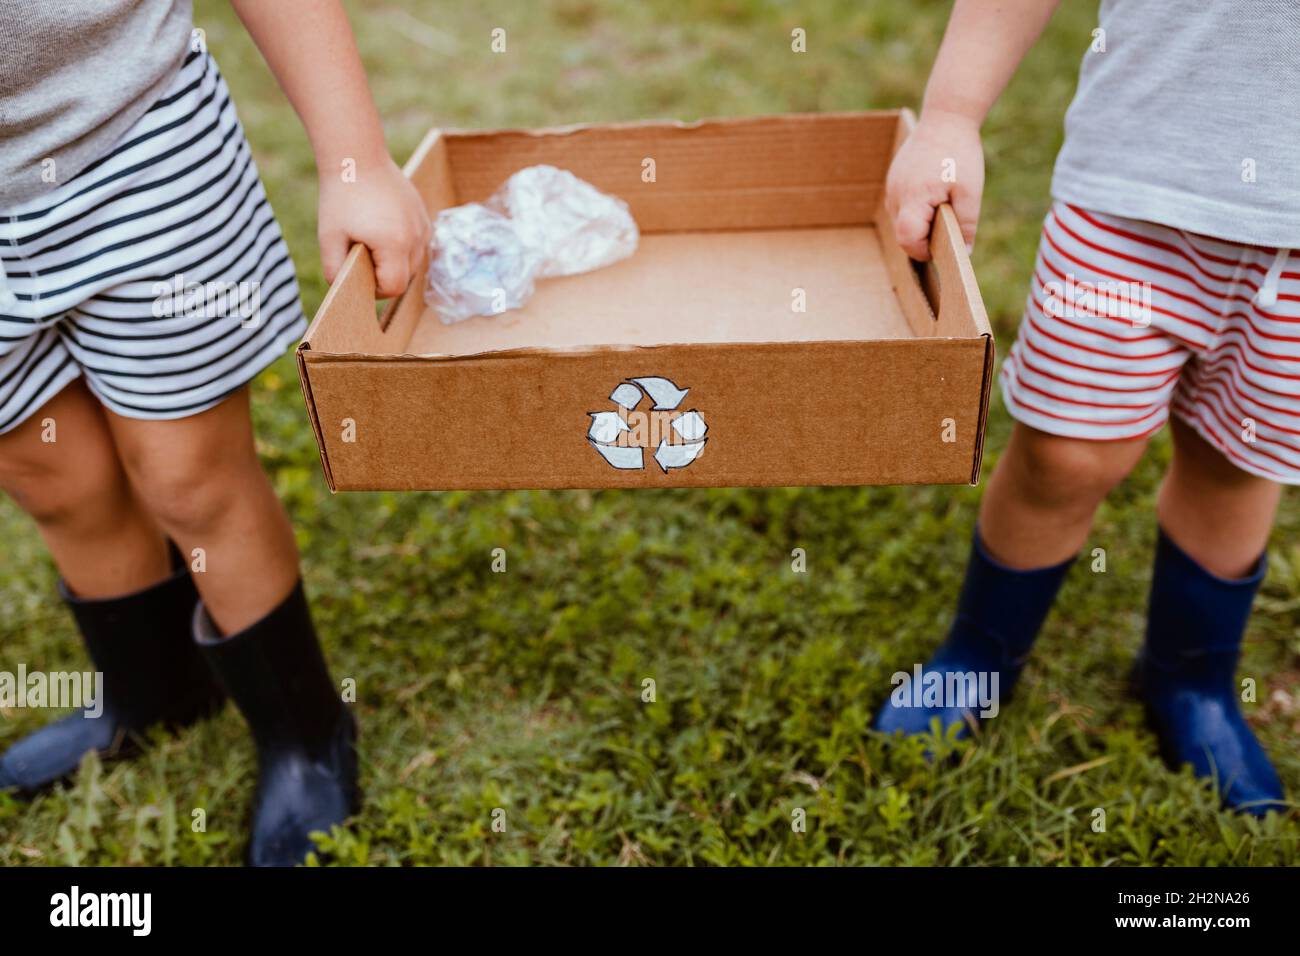 Les garçons collectent le plastique dans une boîte en carton avec le symbole de recyclage Banque D'Images